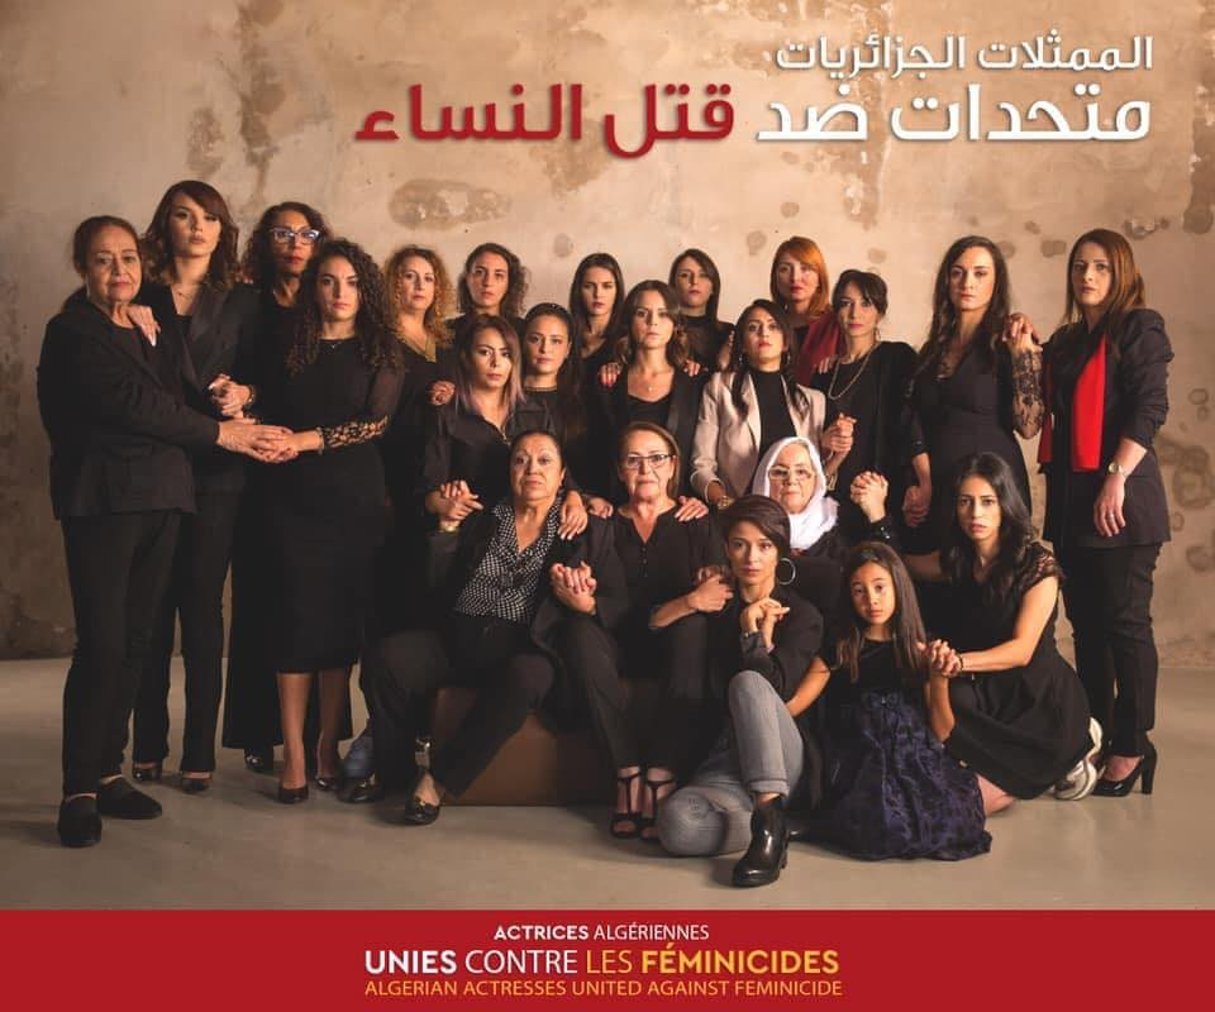 Des actrices algériennes se mobilisent contre les féminicides. © Actrices algeriennes unies contre le féminicide/Facebook